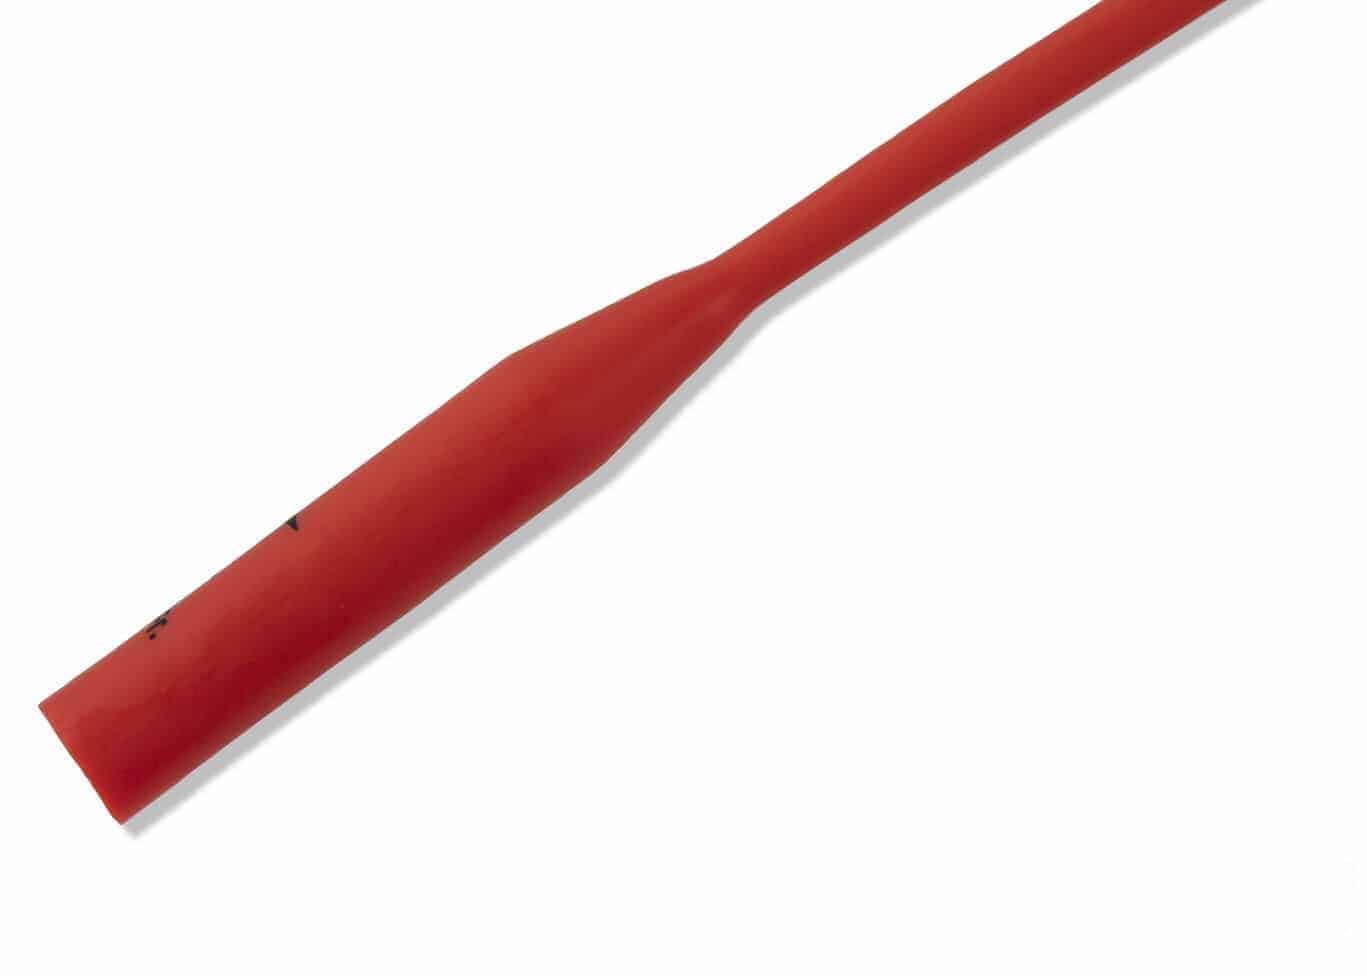 Medline Red-Rubber-Catheter-Funnel